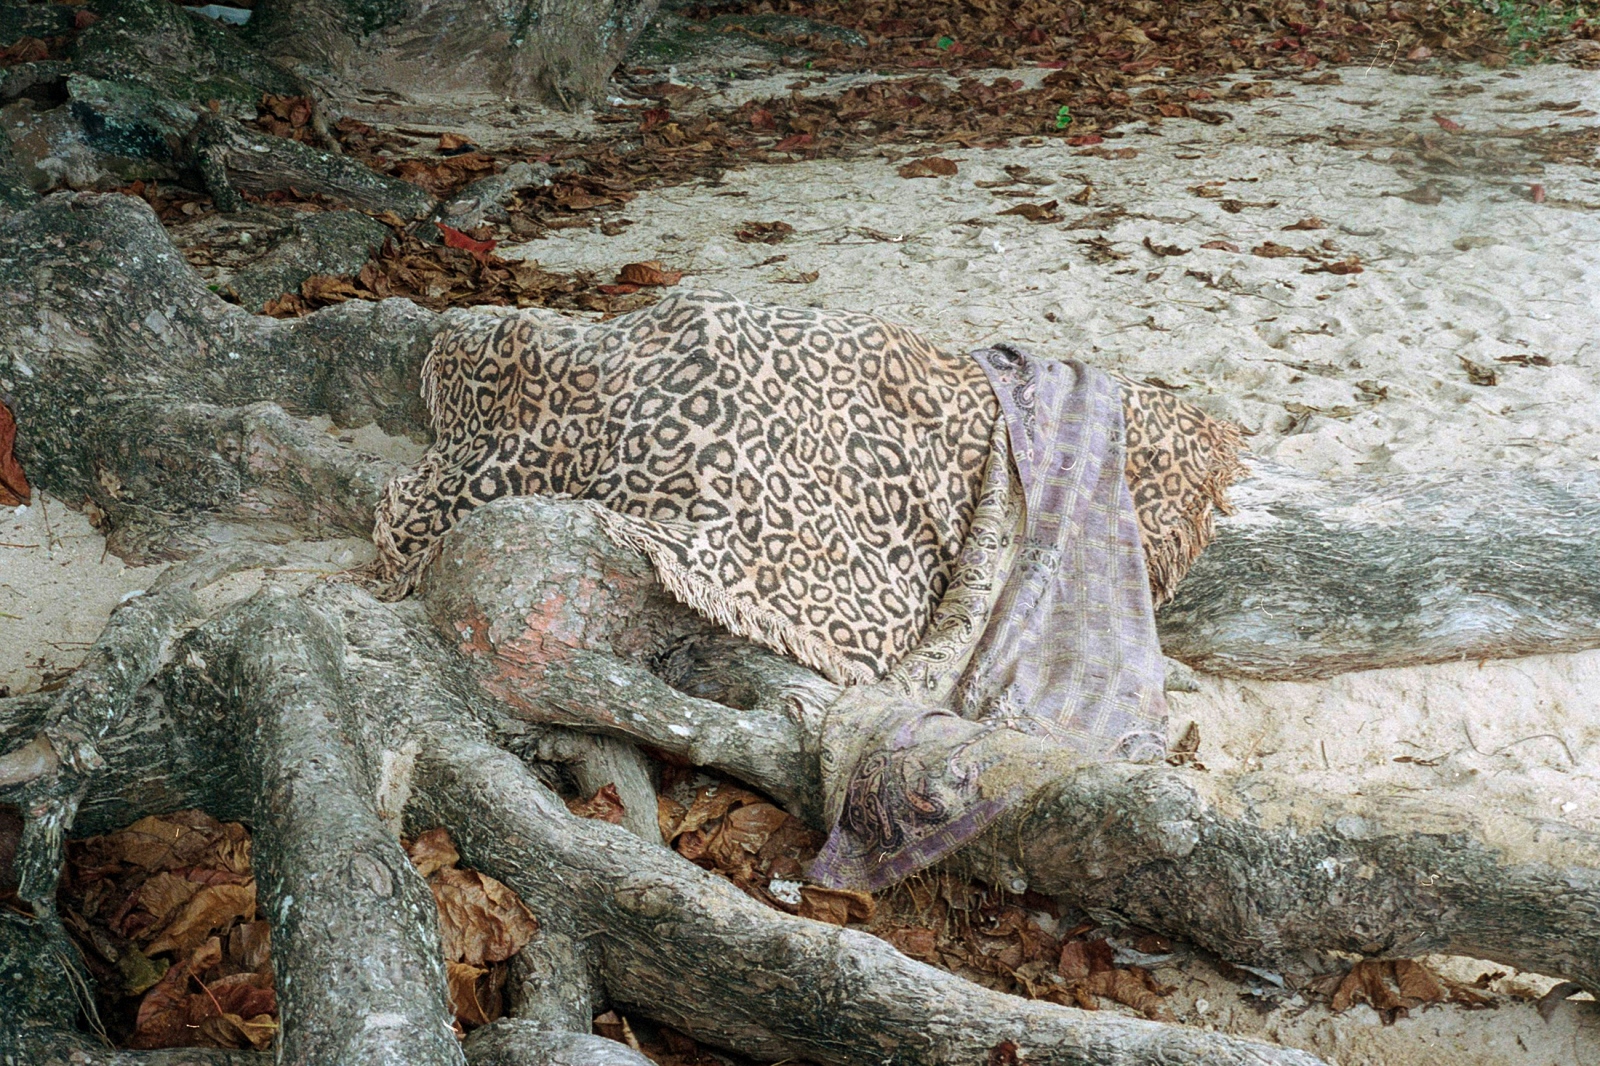 Leopard towel, Hanalei, HI